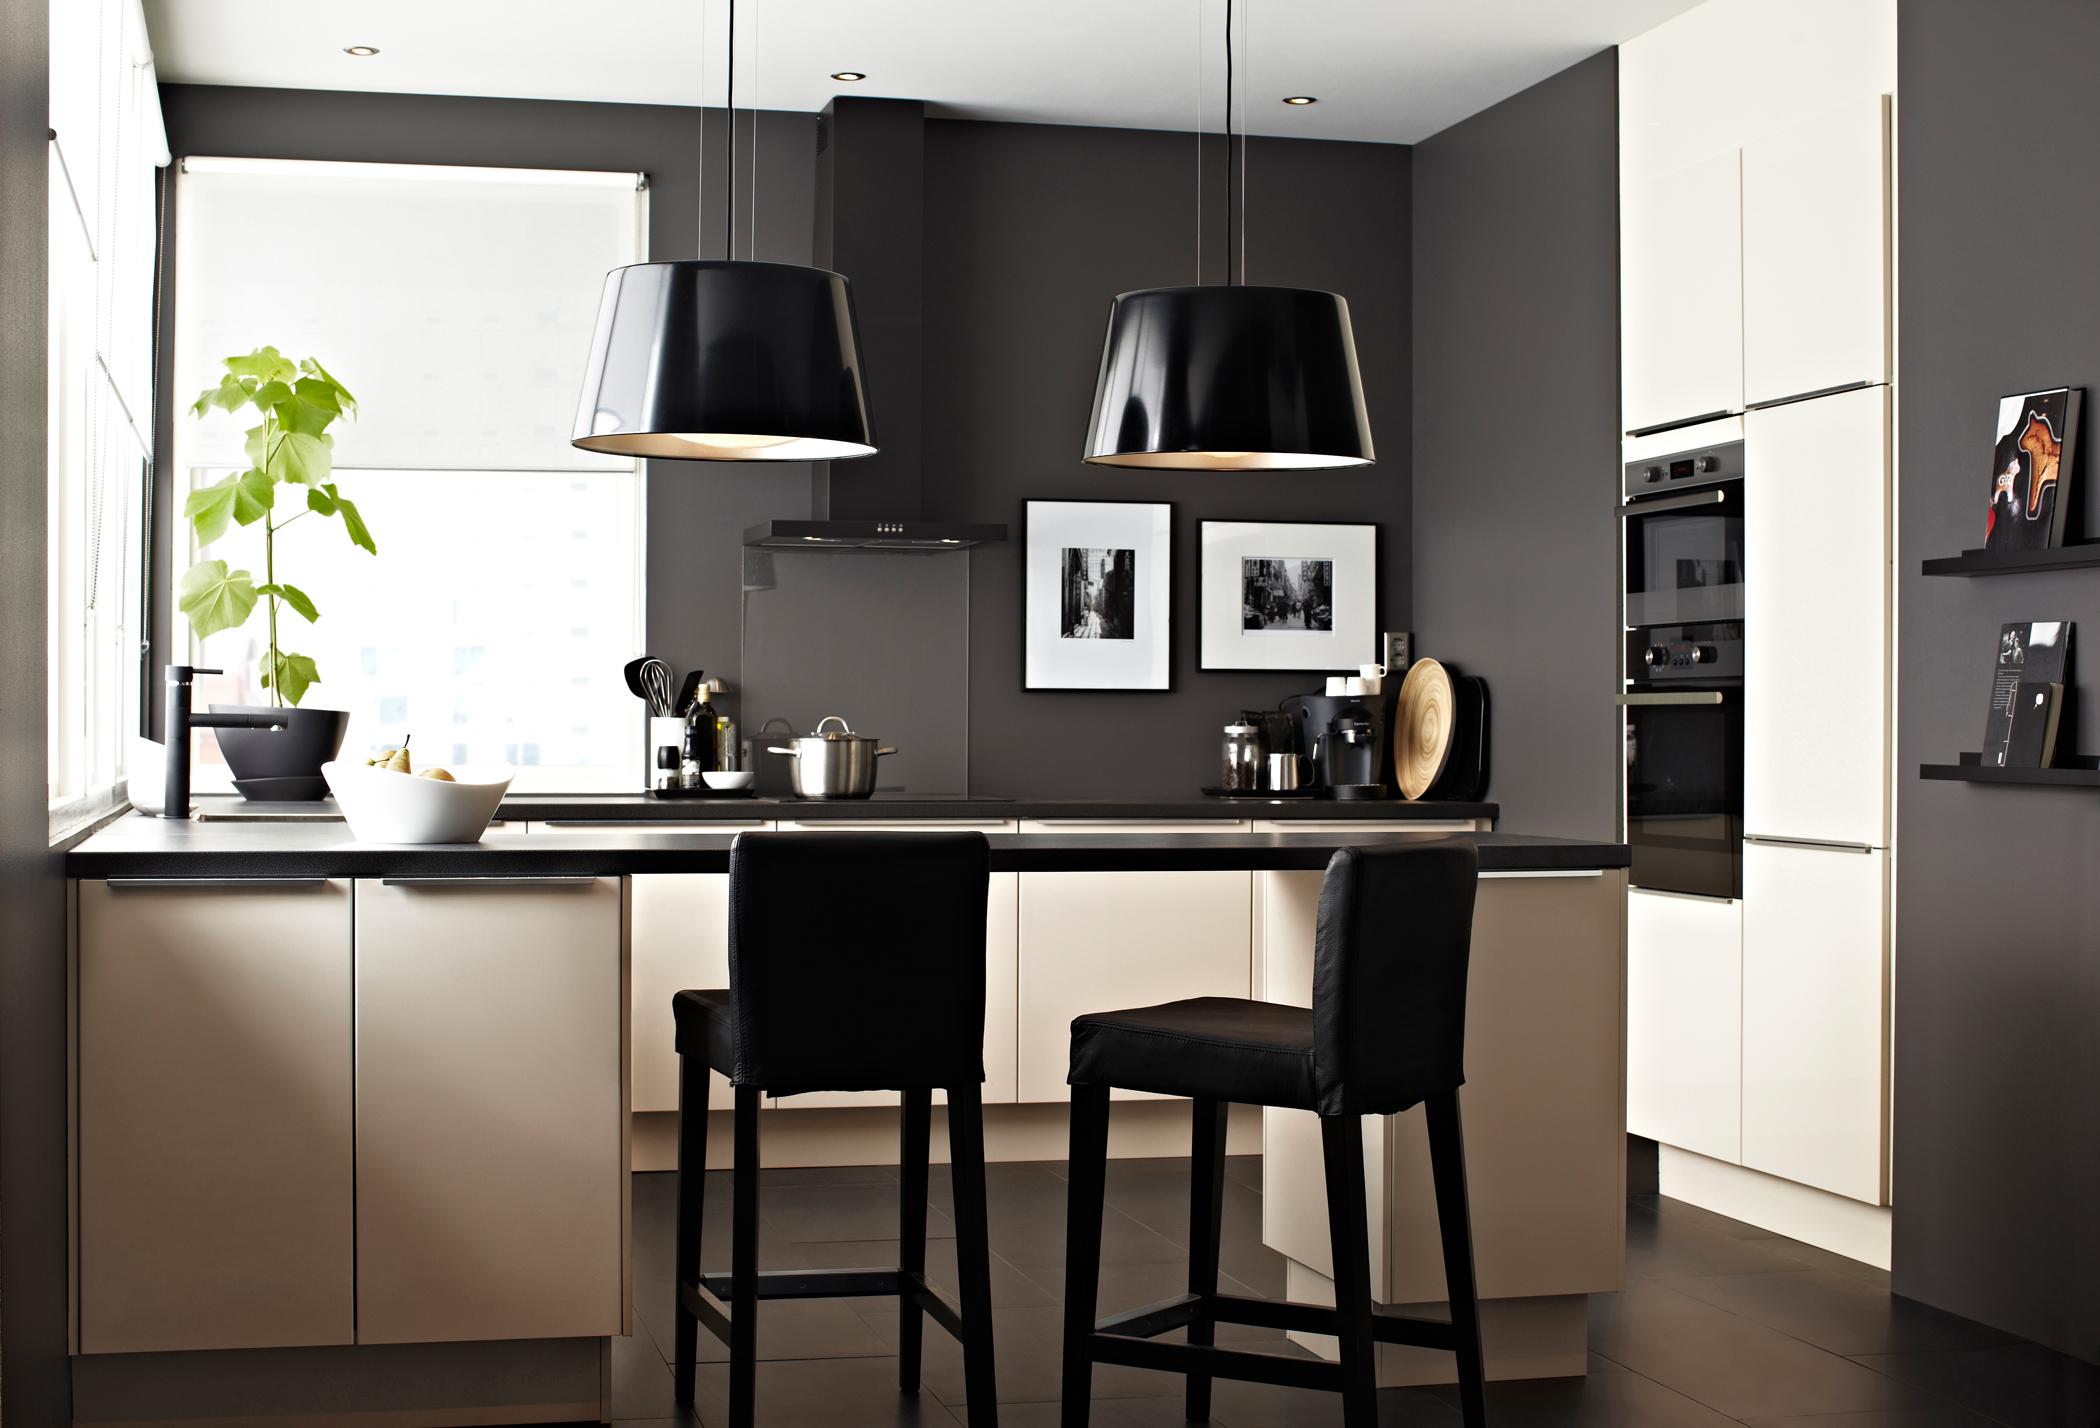 Schwarze Hängeleuchten #ikea #küchentresen #schwarzehängeleuchte #küchengestaltung ©Inter IKEA Systems B.V.